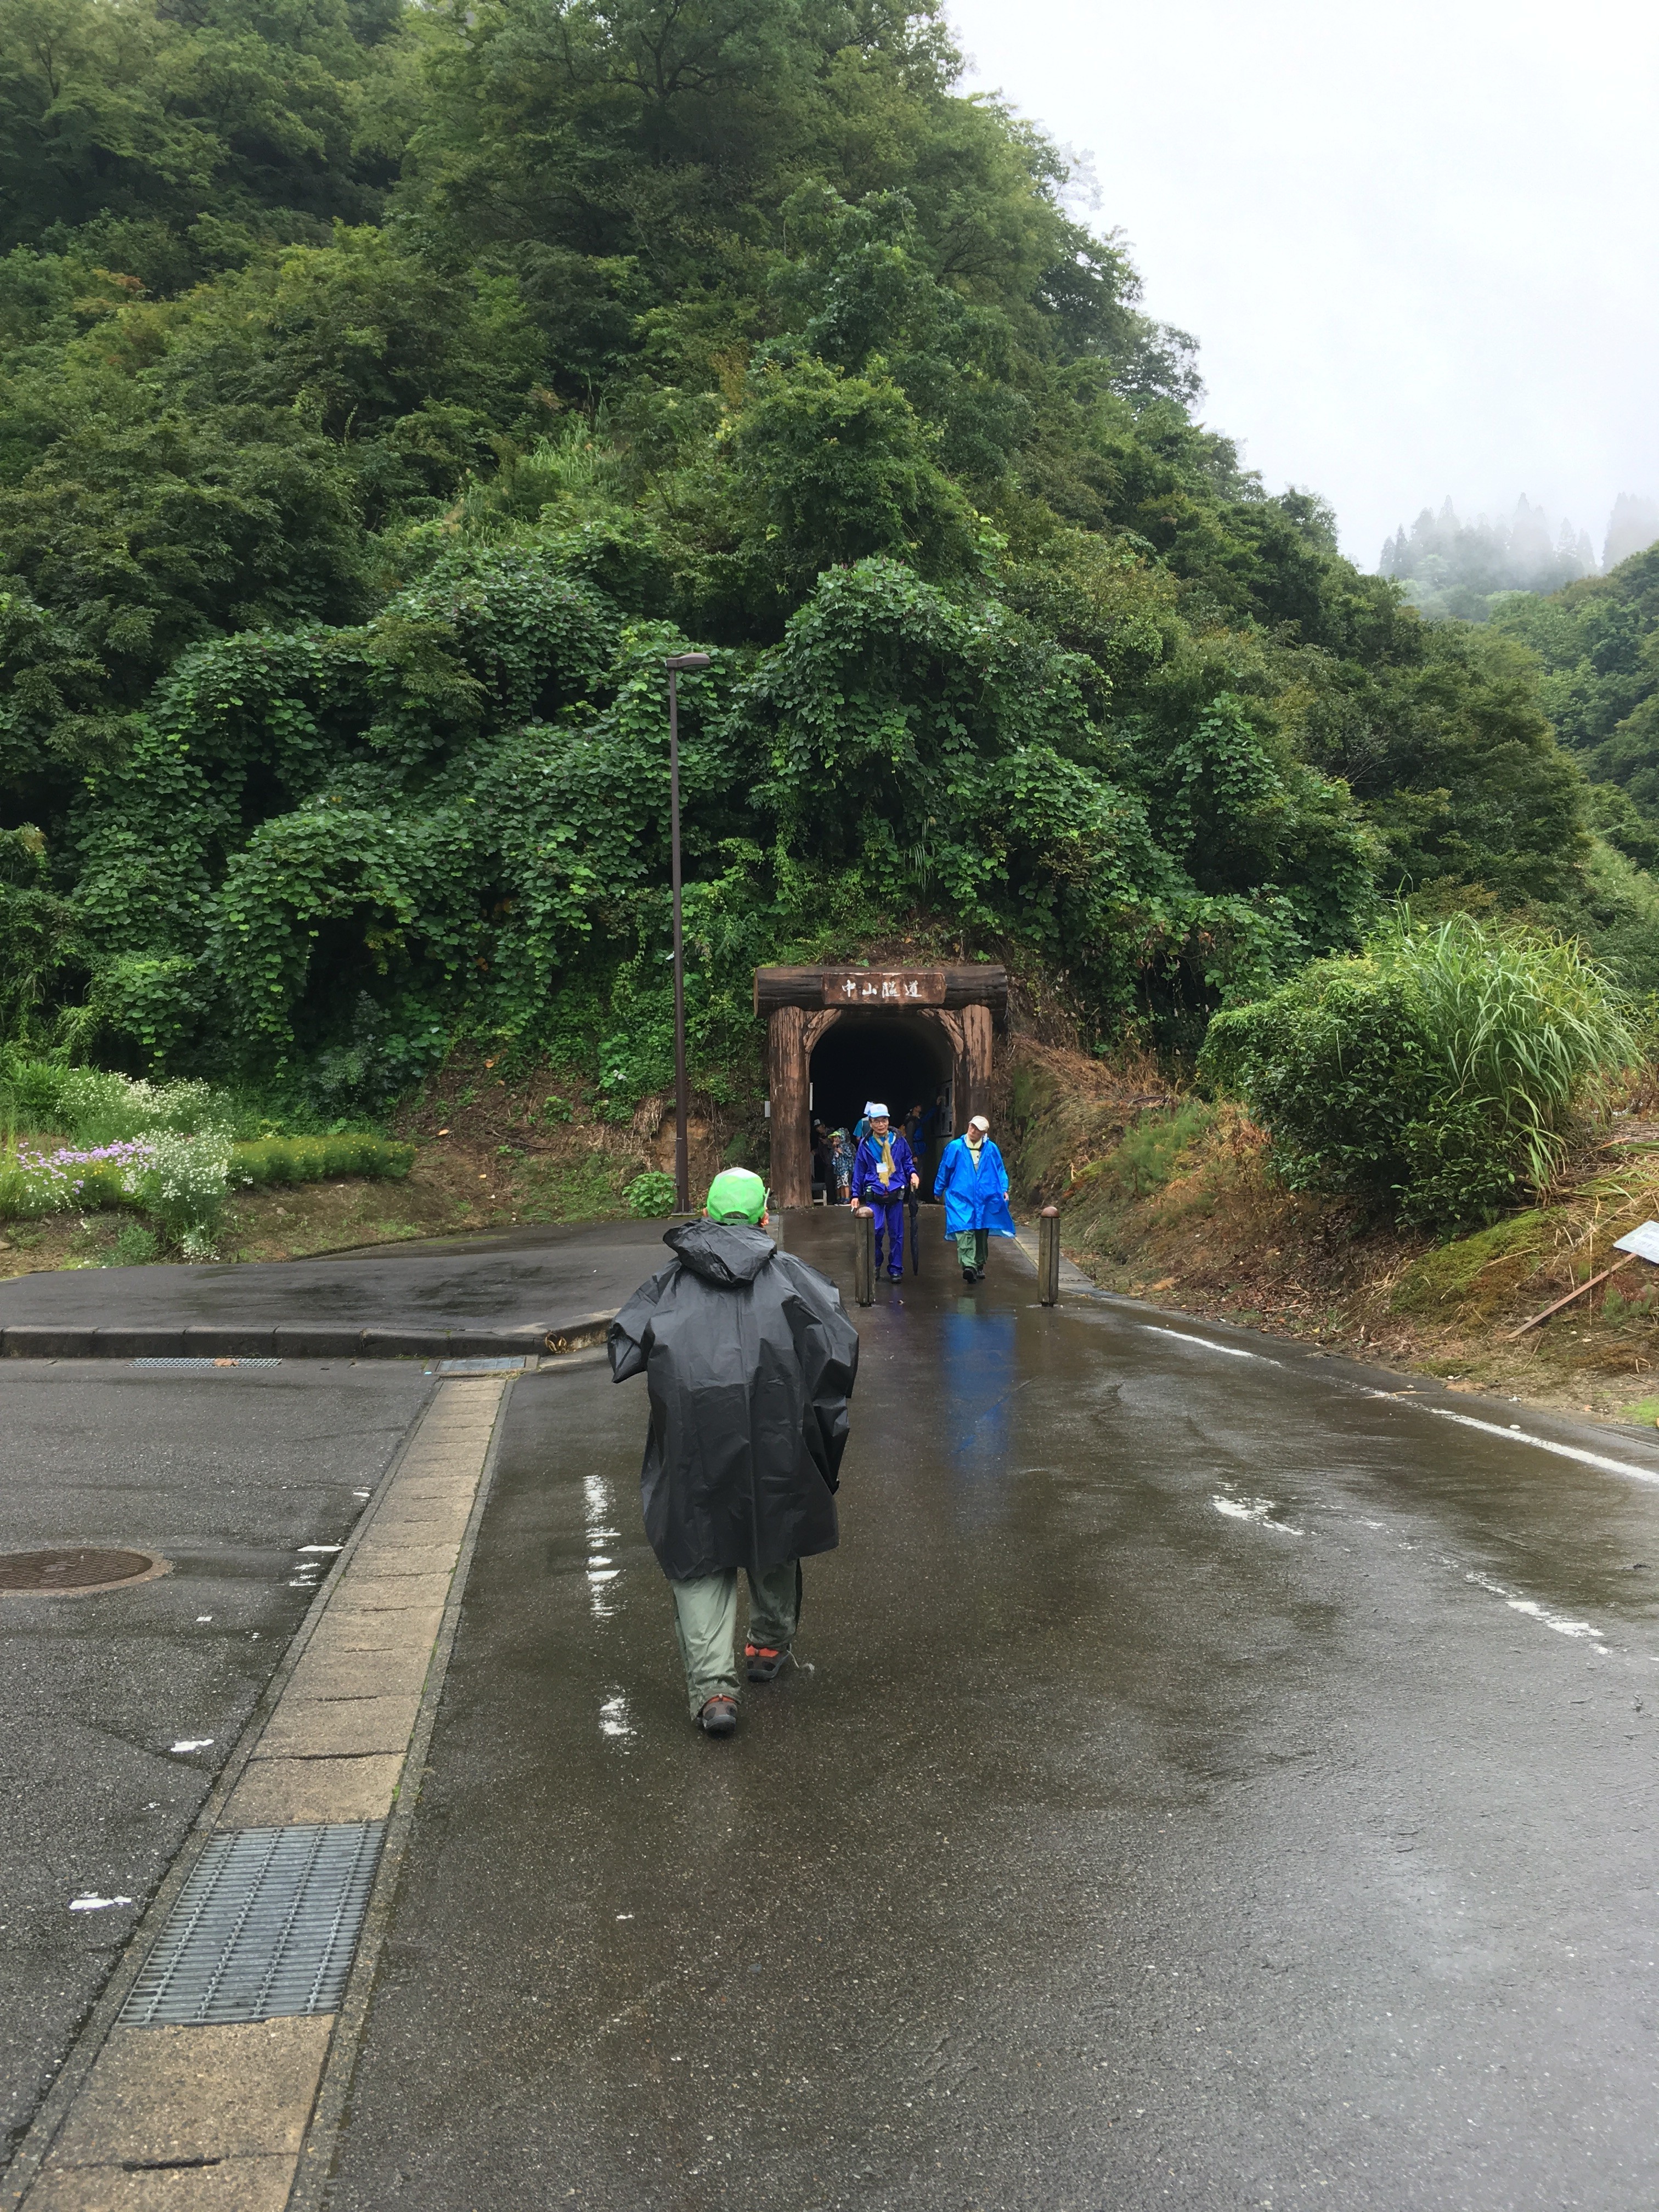 日本一の手堀トンネル中山隊道入口